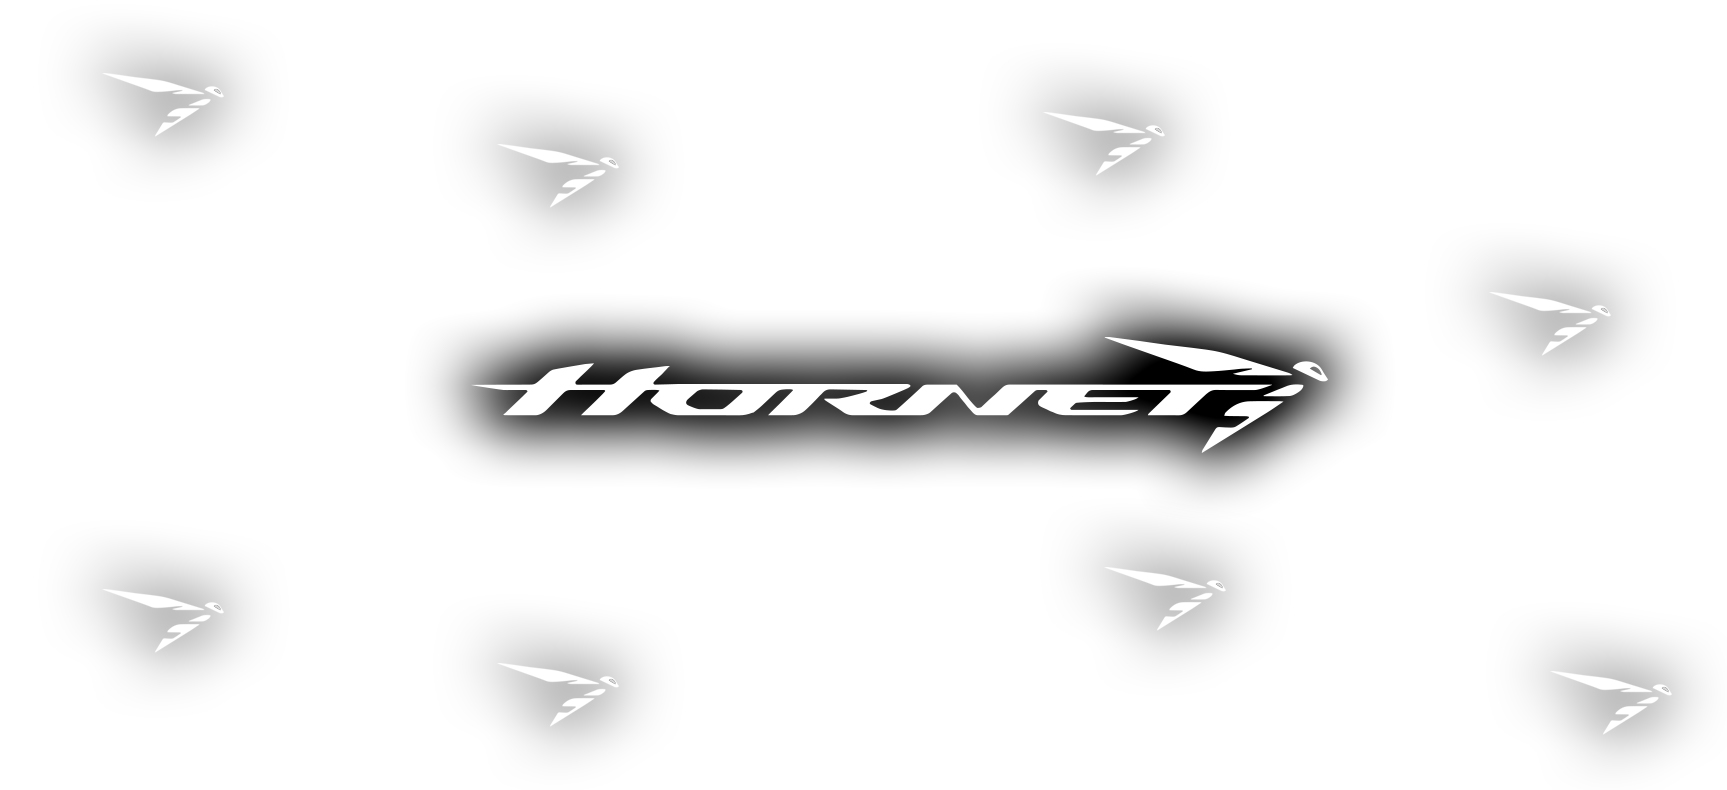 The return of the Hornet - Hornet Logo